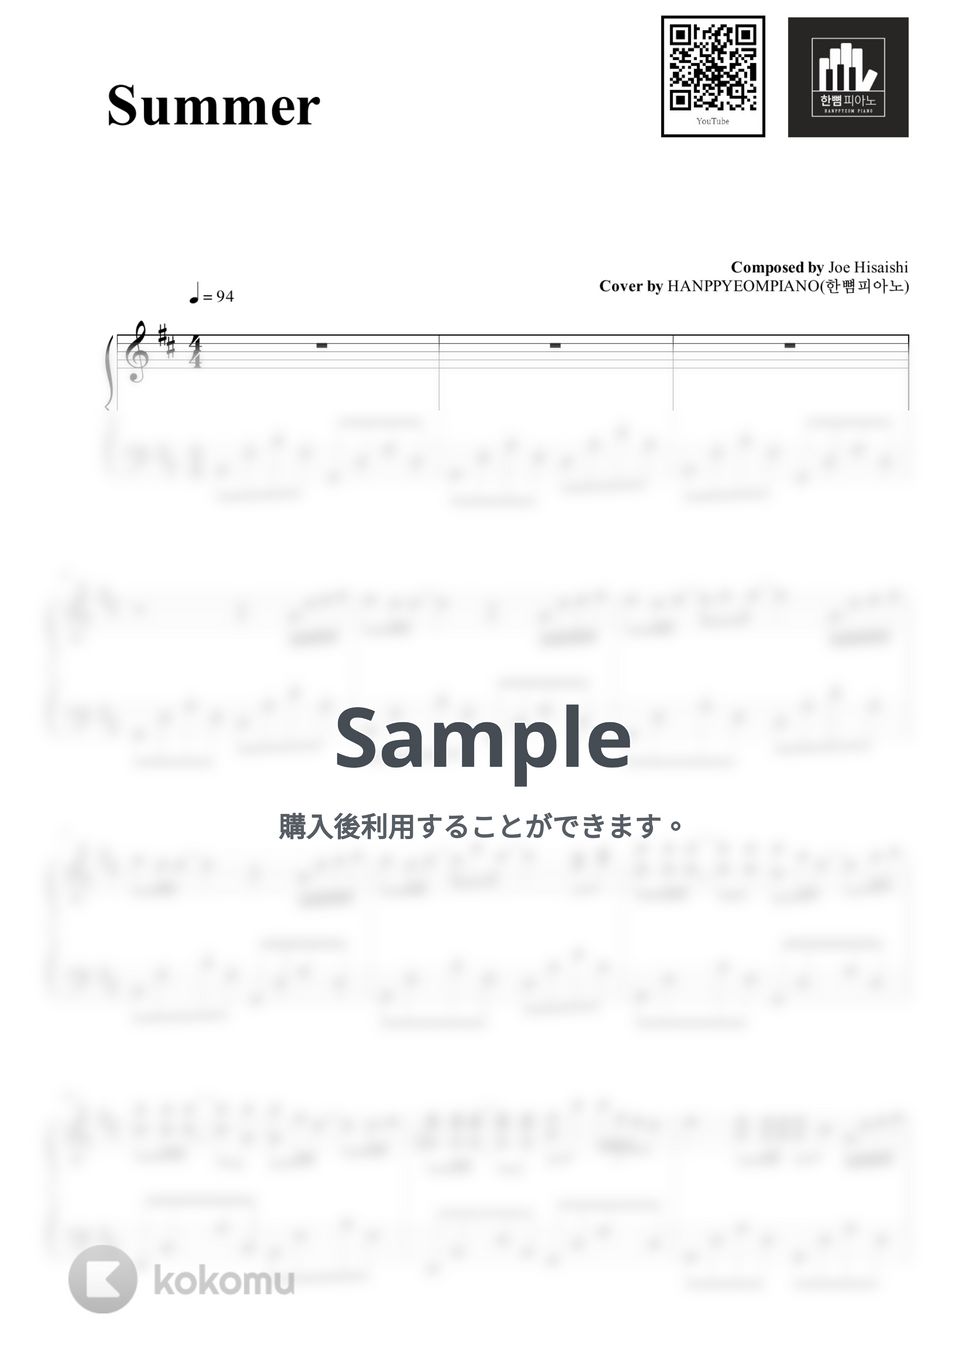 久石譲 - Summer (PIANO COVER) by HANPPYEOMPIANO